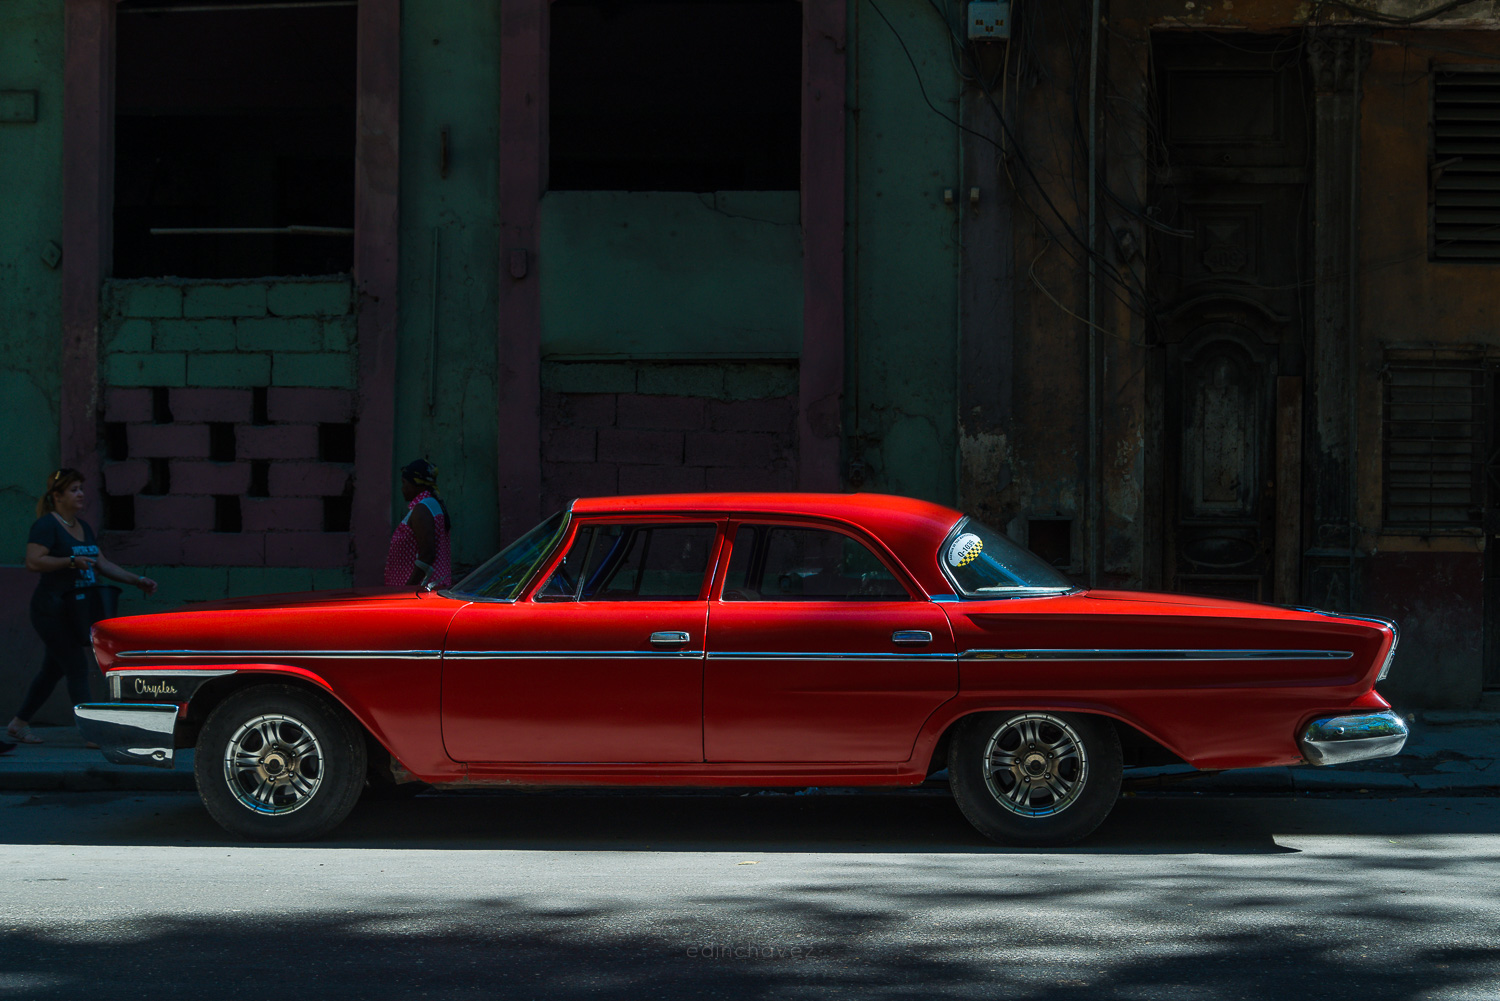 Cuban cars